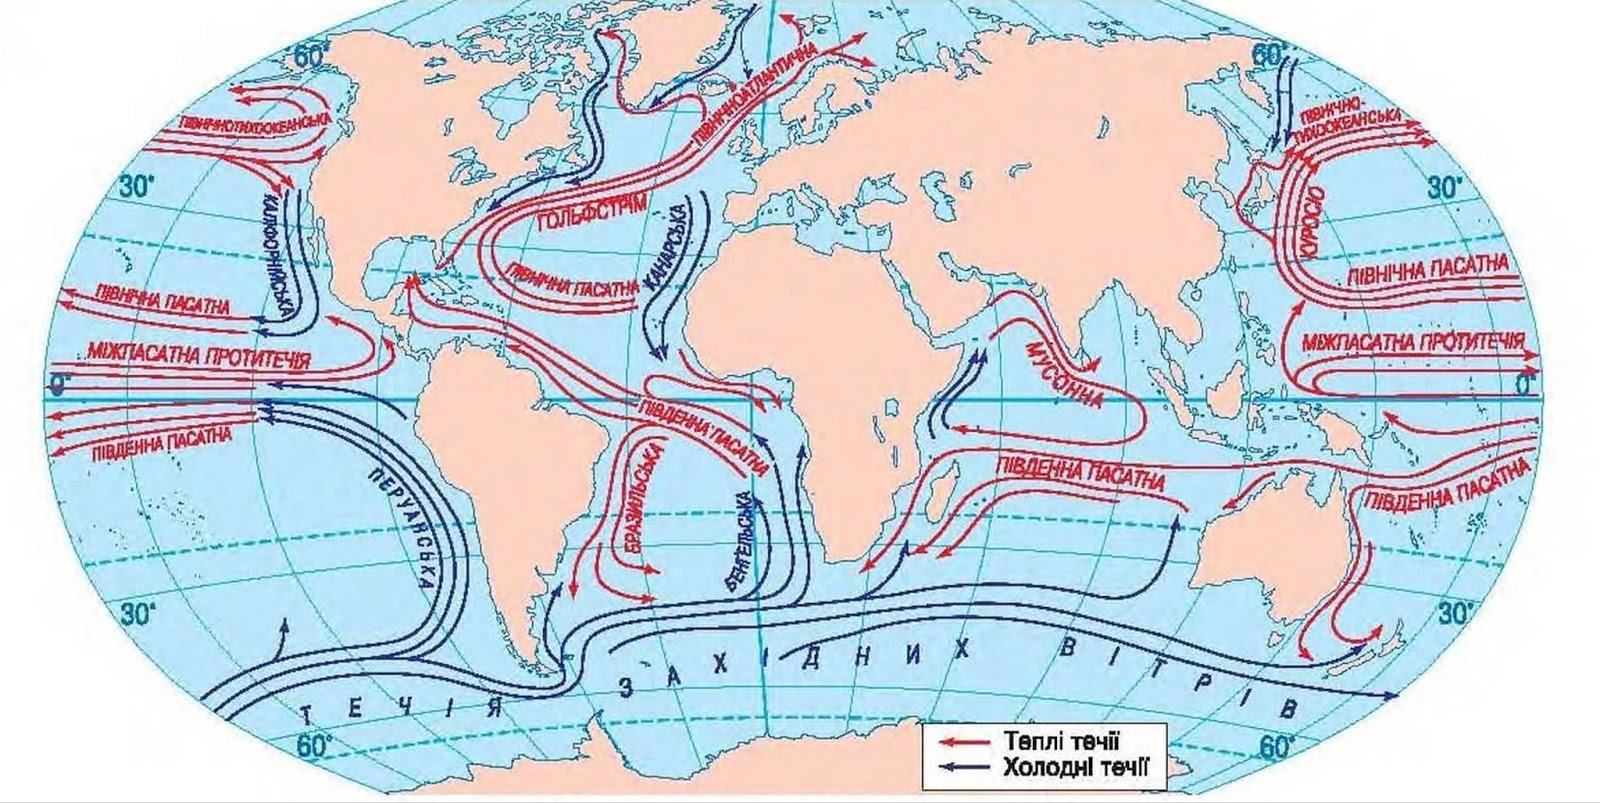 Тёплые и холодные течения на карте мирового океана. Тёплые течения мирового океана на карте.